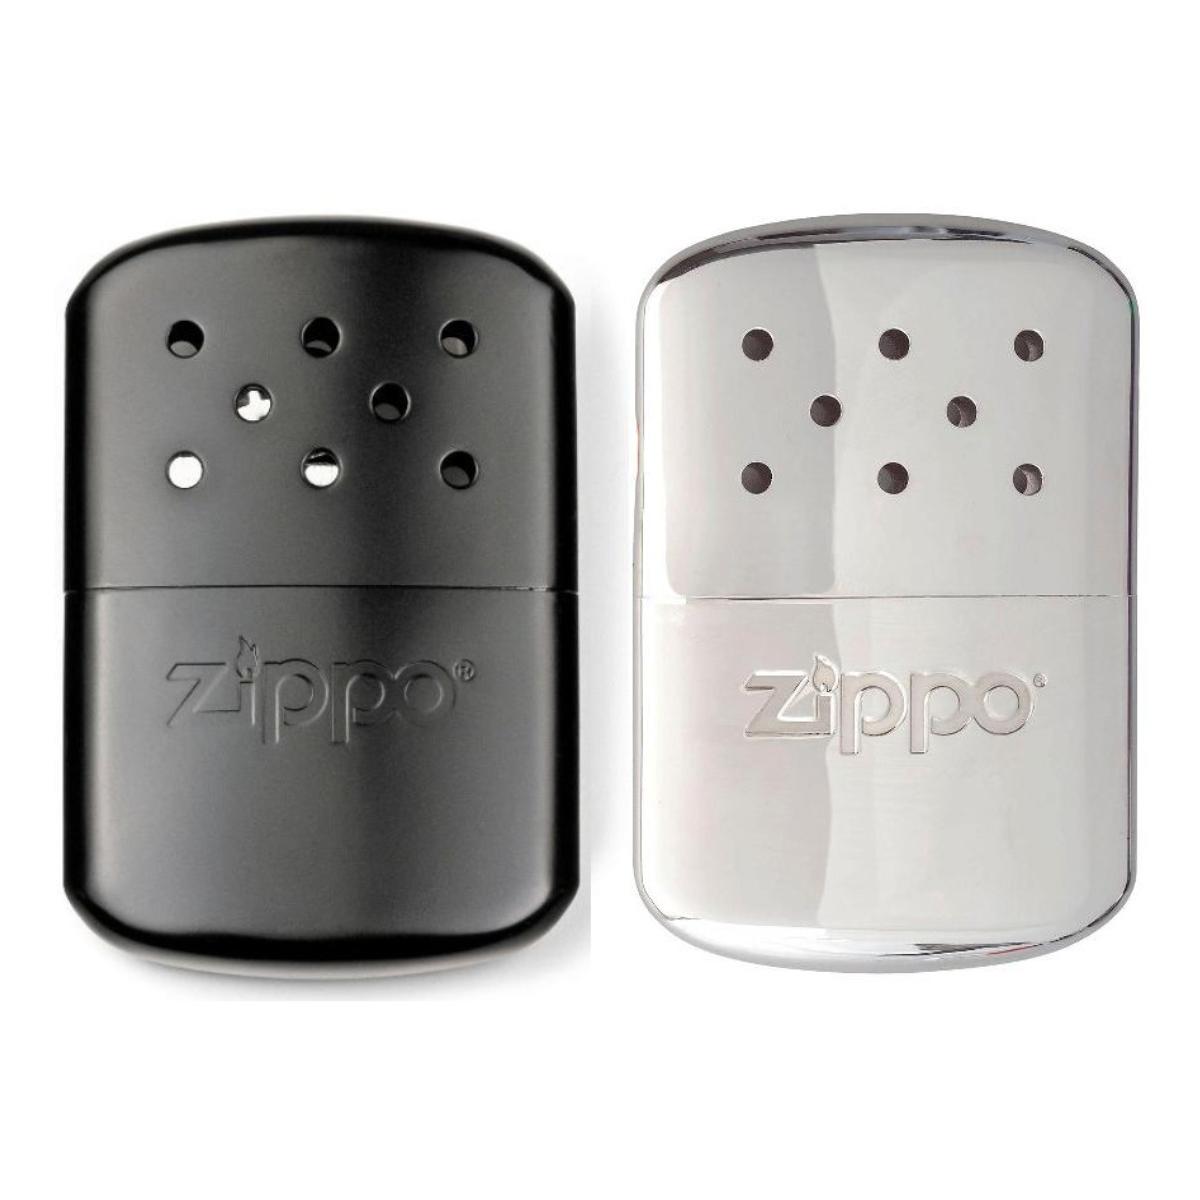 ZIPPO Handwärmer 2 Pullen Benzin Taschenofen NEU+OVP schwarz Taschenwärmer 